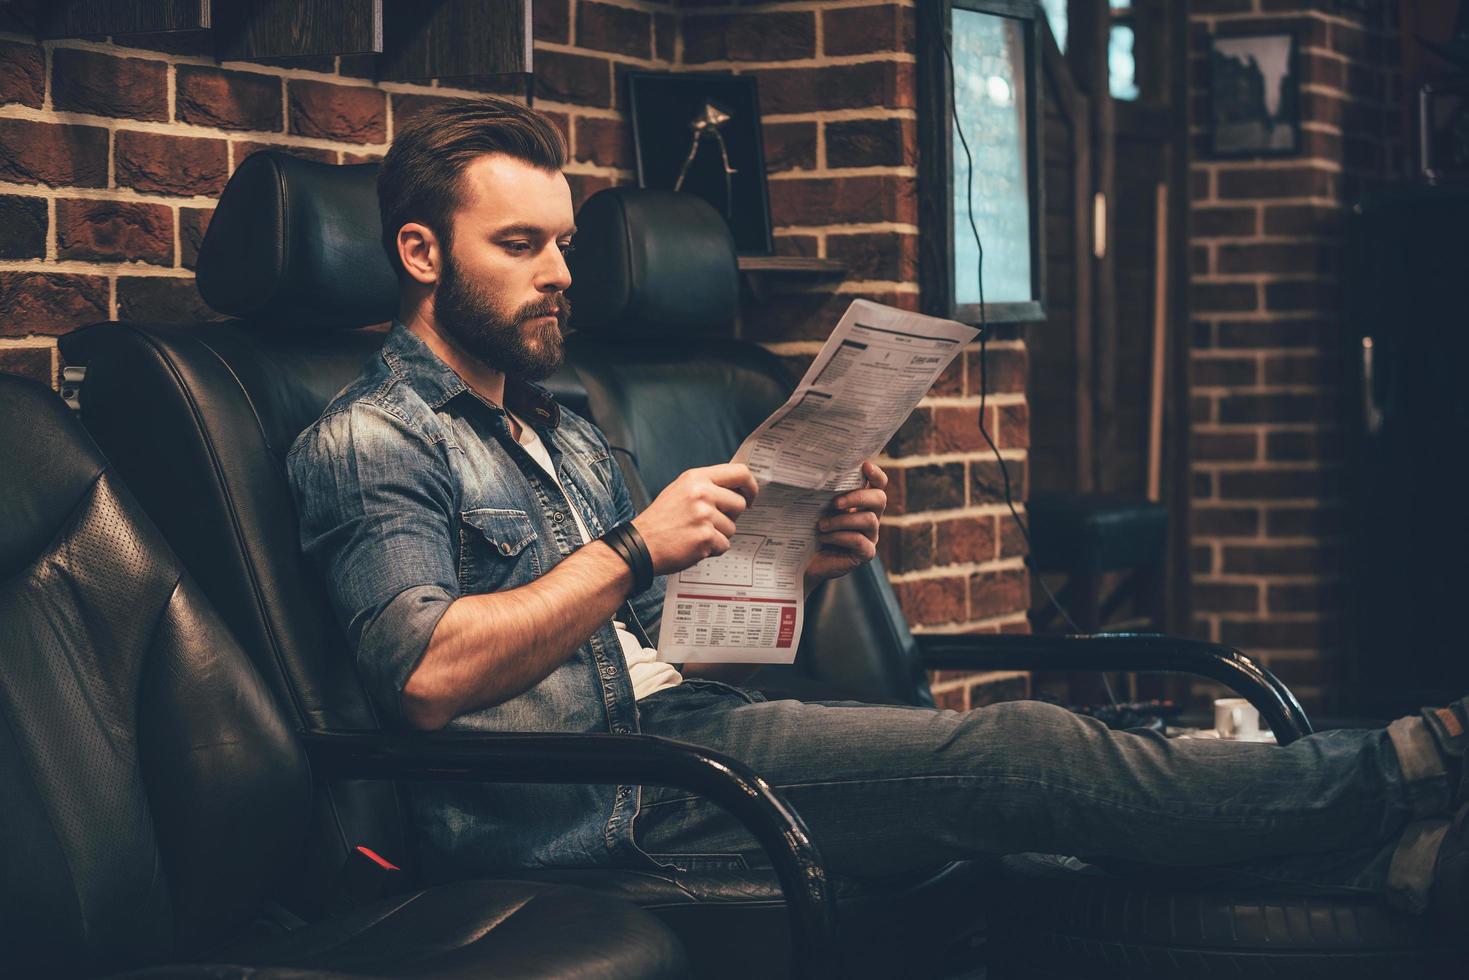 en attente de rendez-vous. beau jeune homme barbu lisant le journal assis dans une chaise confortable au salon de coiffure photo